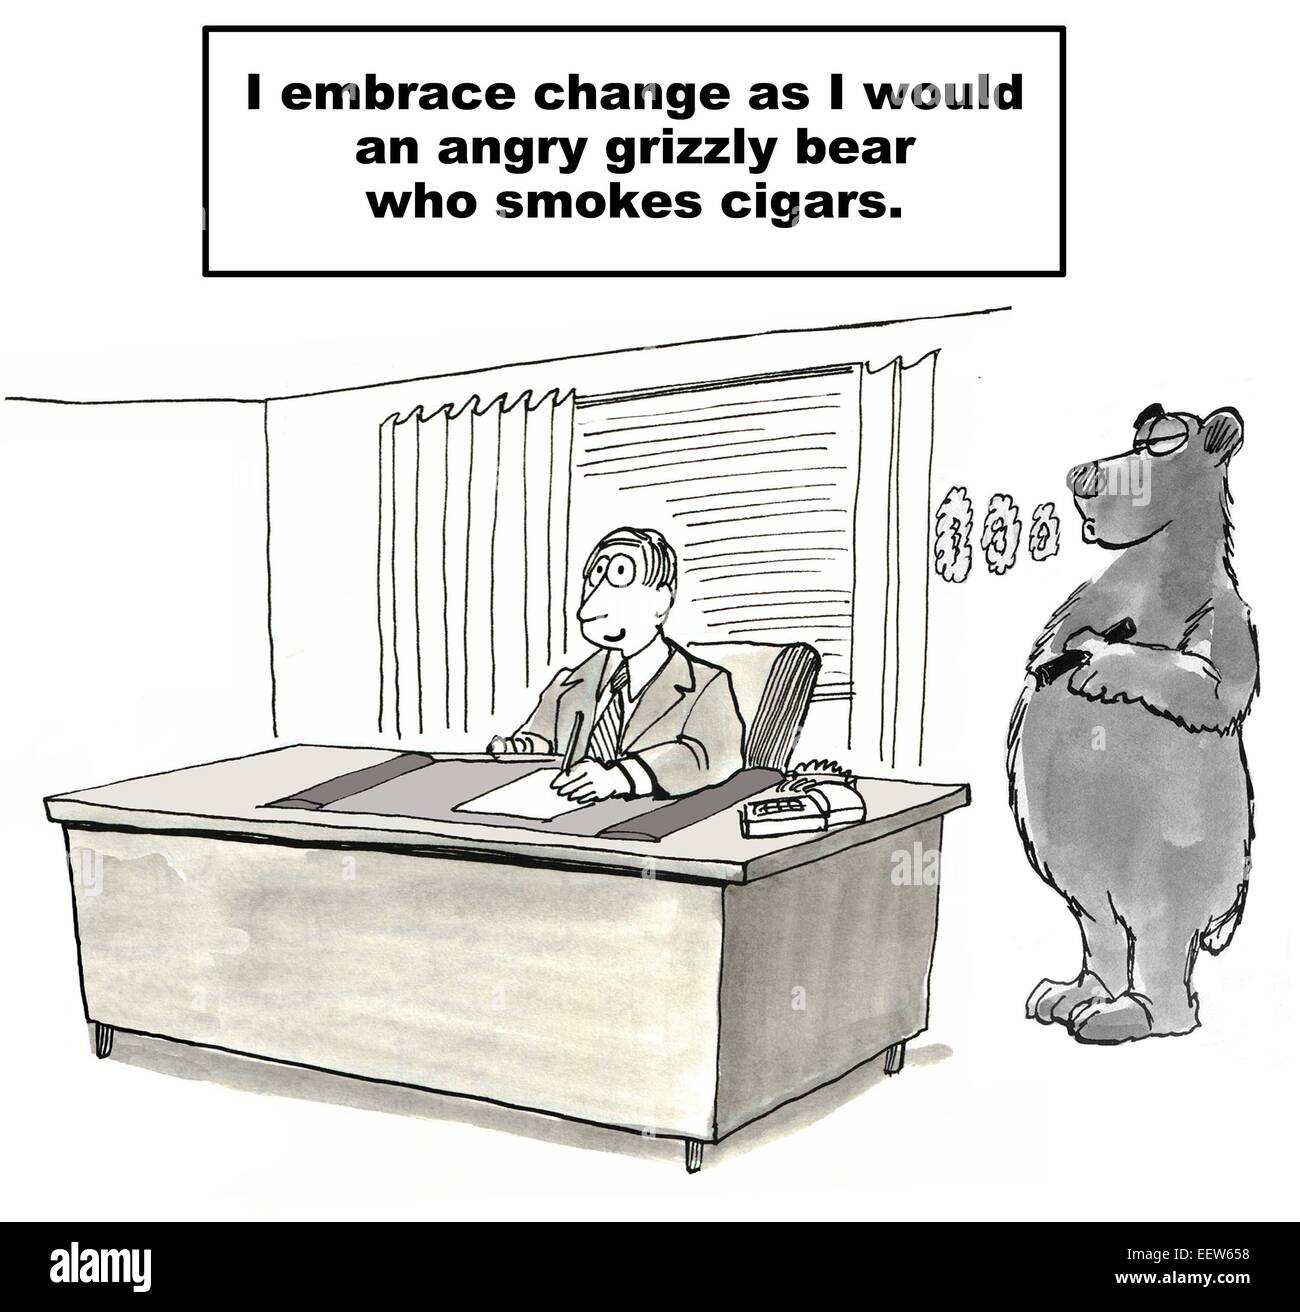 Karikatur von Geschäftsmann, der Veränderung umarmt, als würde er einen wütenden Grizzly, Zigarren, raucht, obwohl es in Wirklichkeit ist. Stockfoto